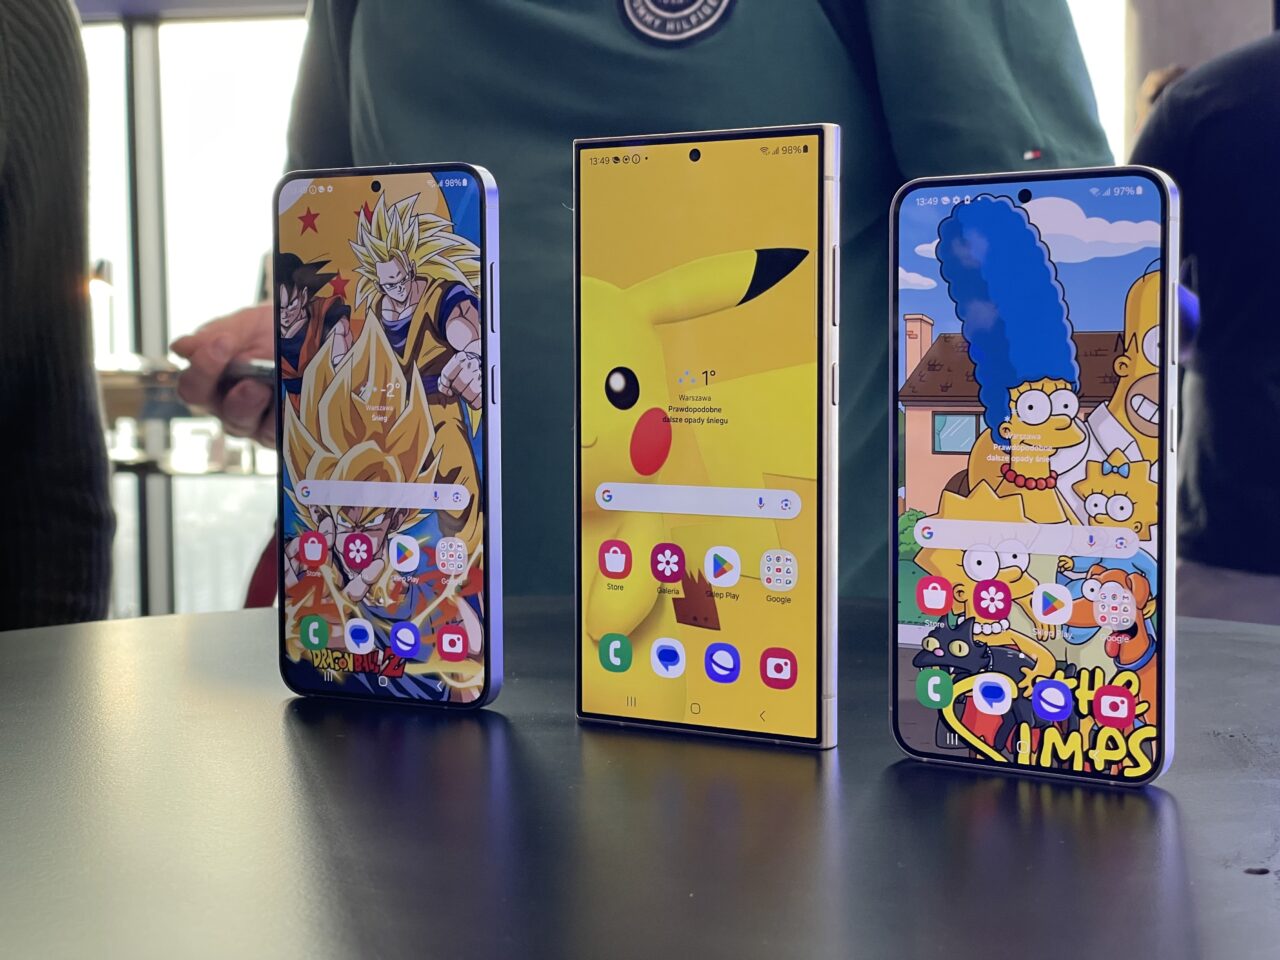 Trzy smartfony ustawione obok siebie wyświetlają różne kolorowe tapety z postaciami z animacji: Dragon Ball, Pokémon i The Simpsons.